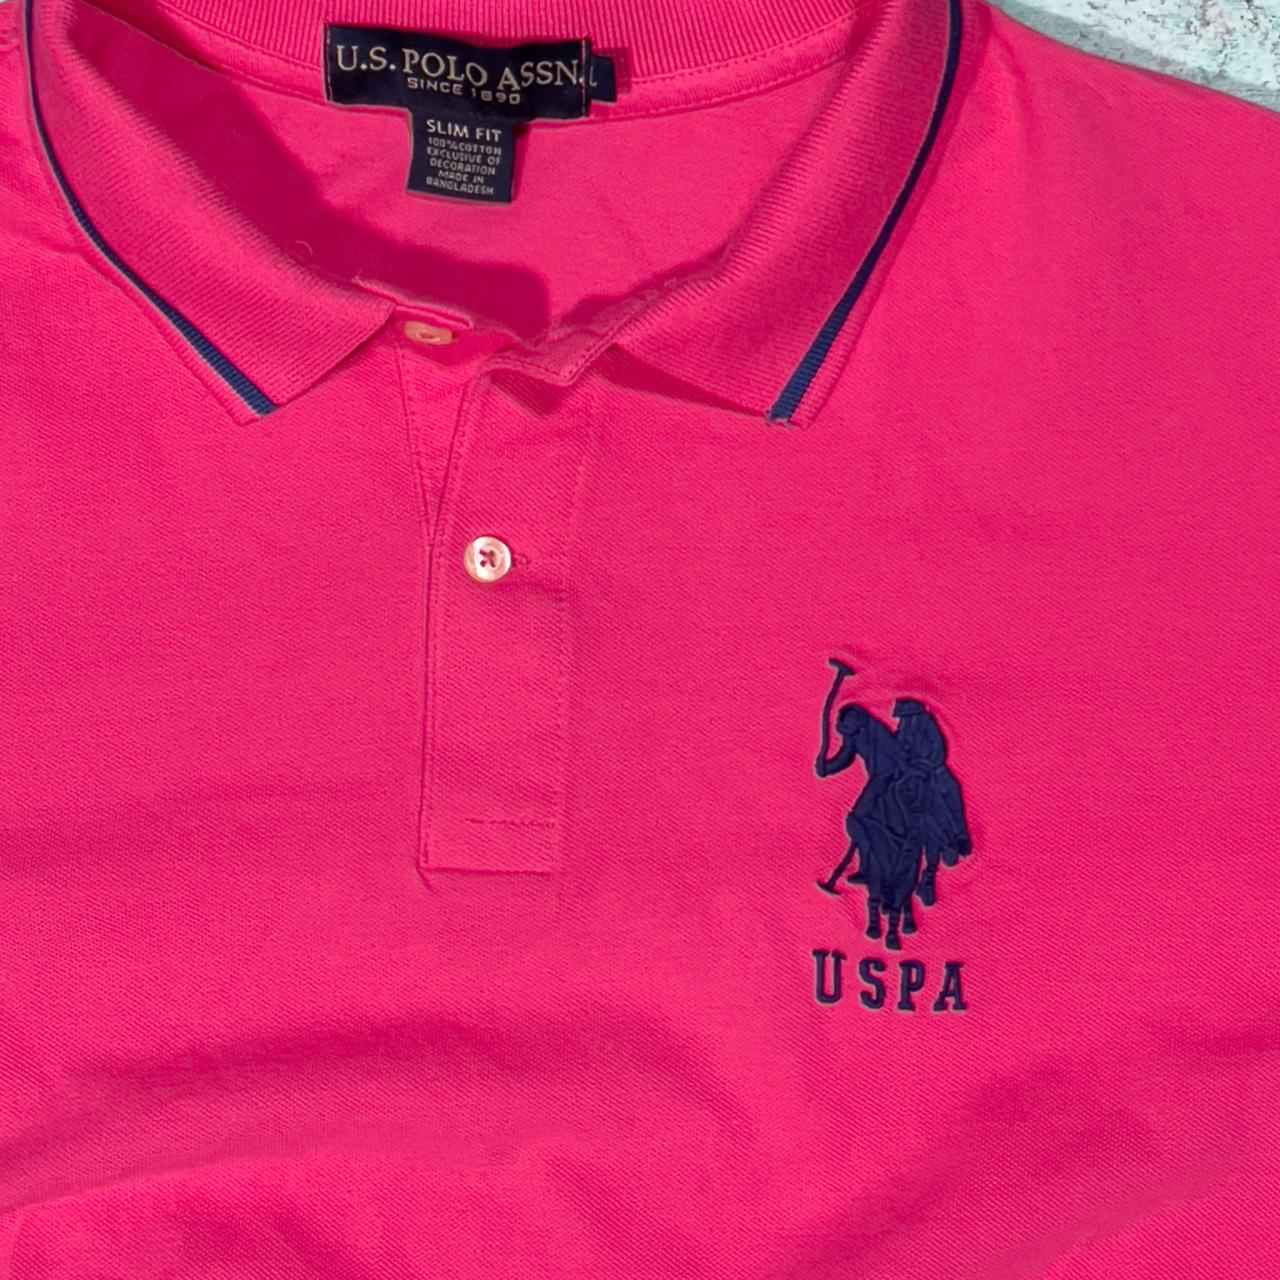 U.S. Polo Assn. Men's Pink Polo-shirts (2)